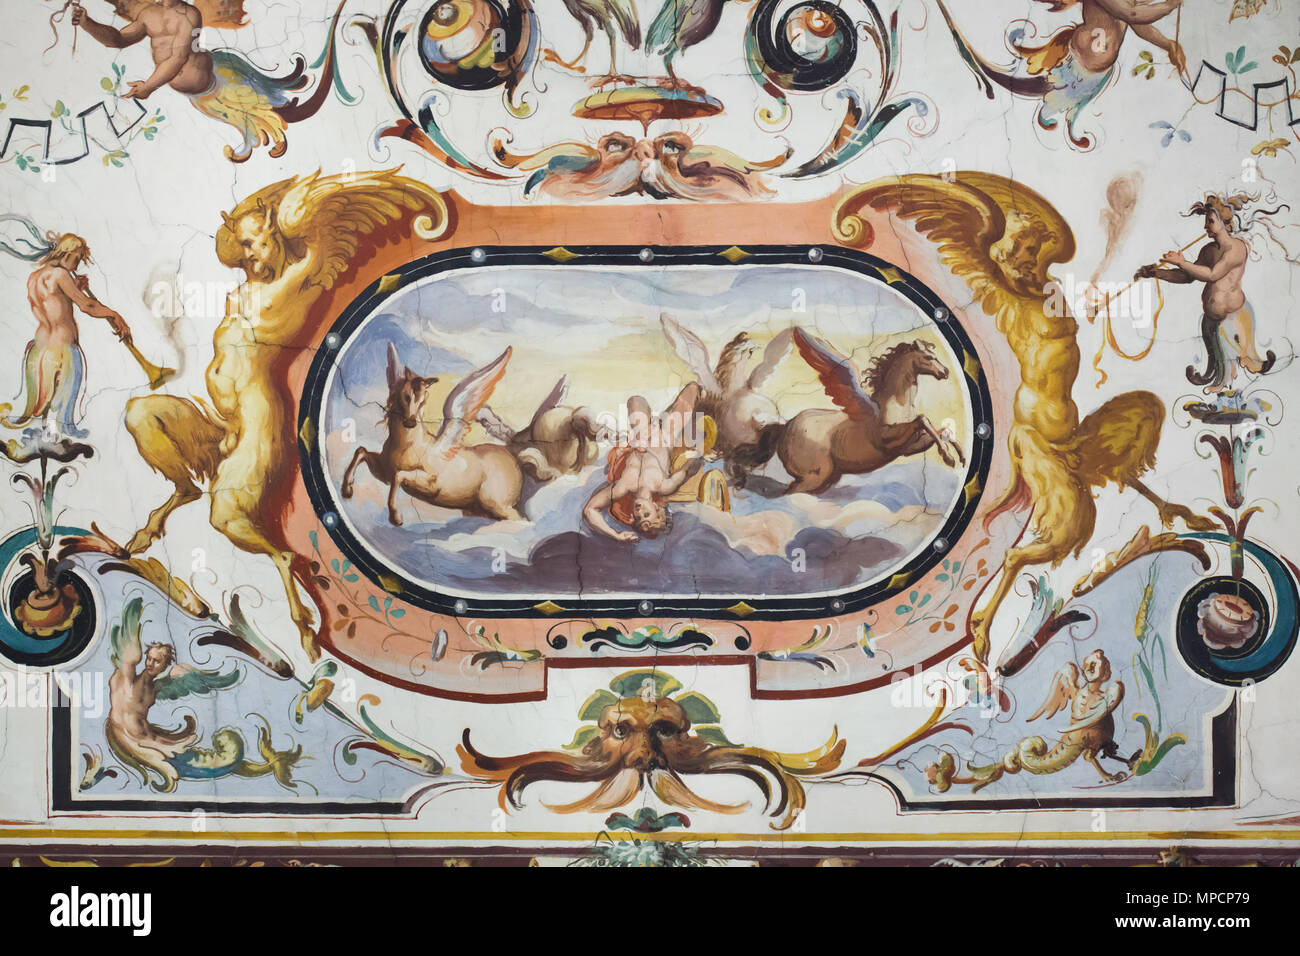 La caduta di Phaethon. Soffitto dipinto nel Corridoio Vasariano nella Galleria degli Uffizi (Galleria degli Uffizi di Firenze, Toscana, Italia. Foto Stock